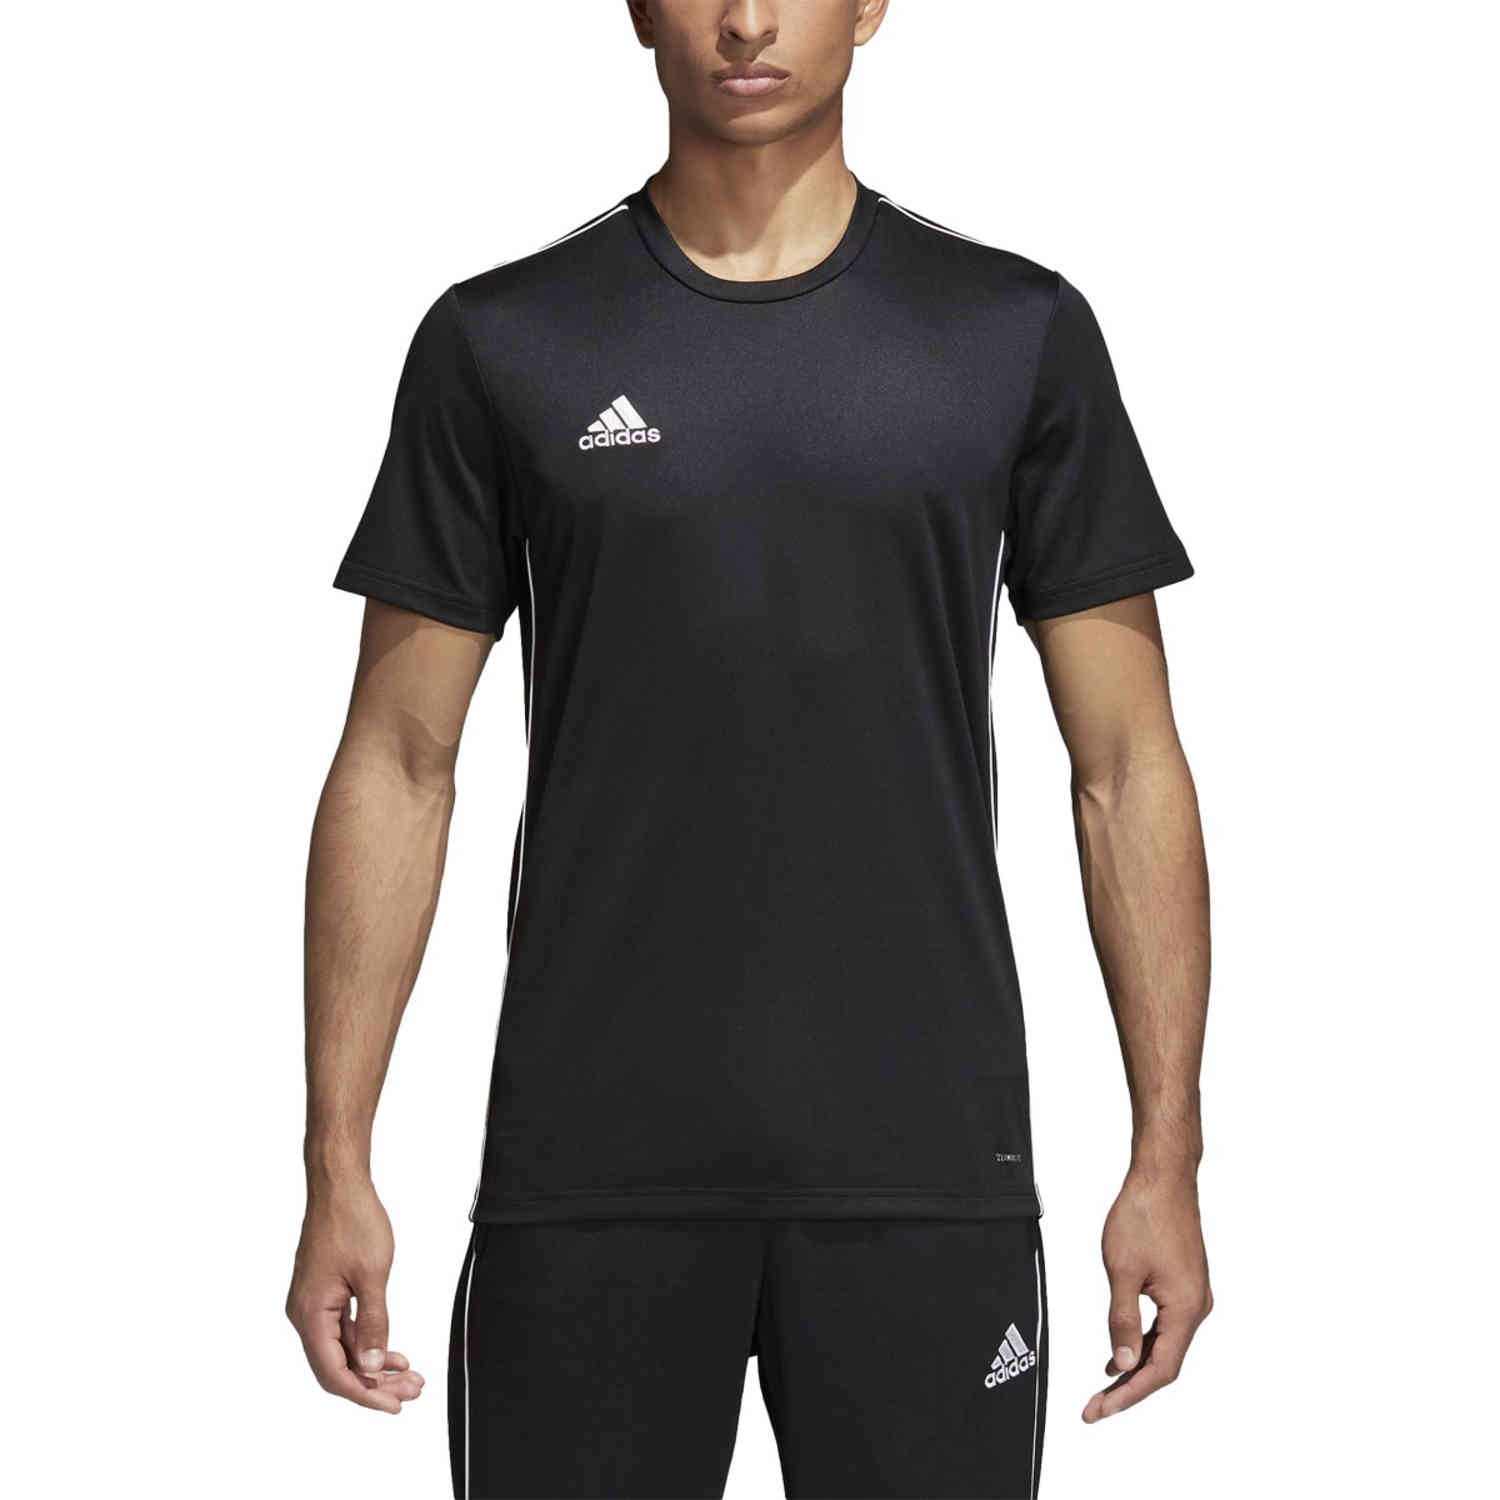 adidas Core 18 Training Jersey - Black/White - SoccerPro